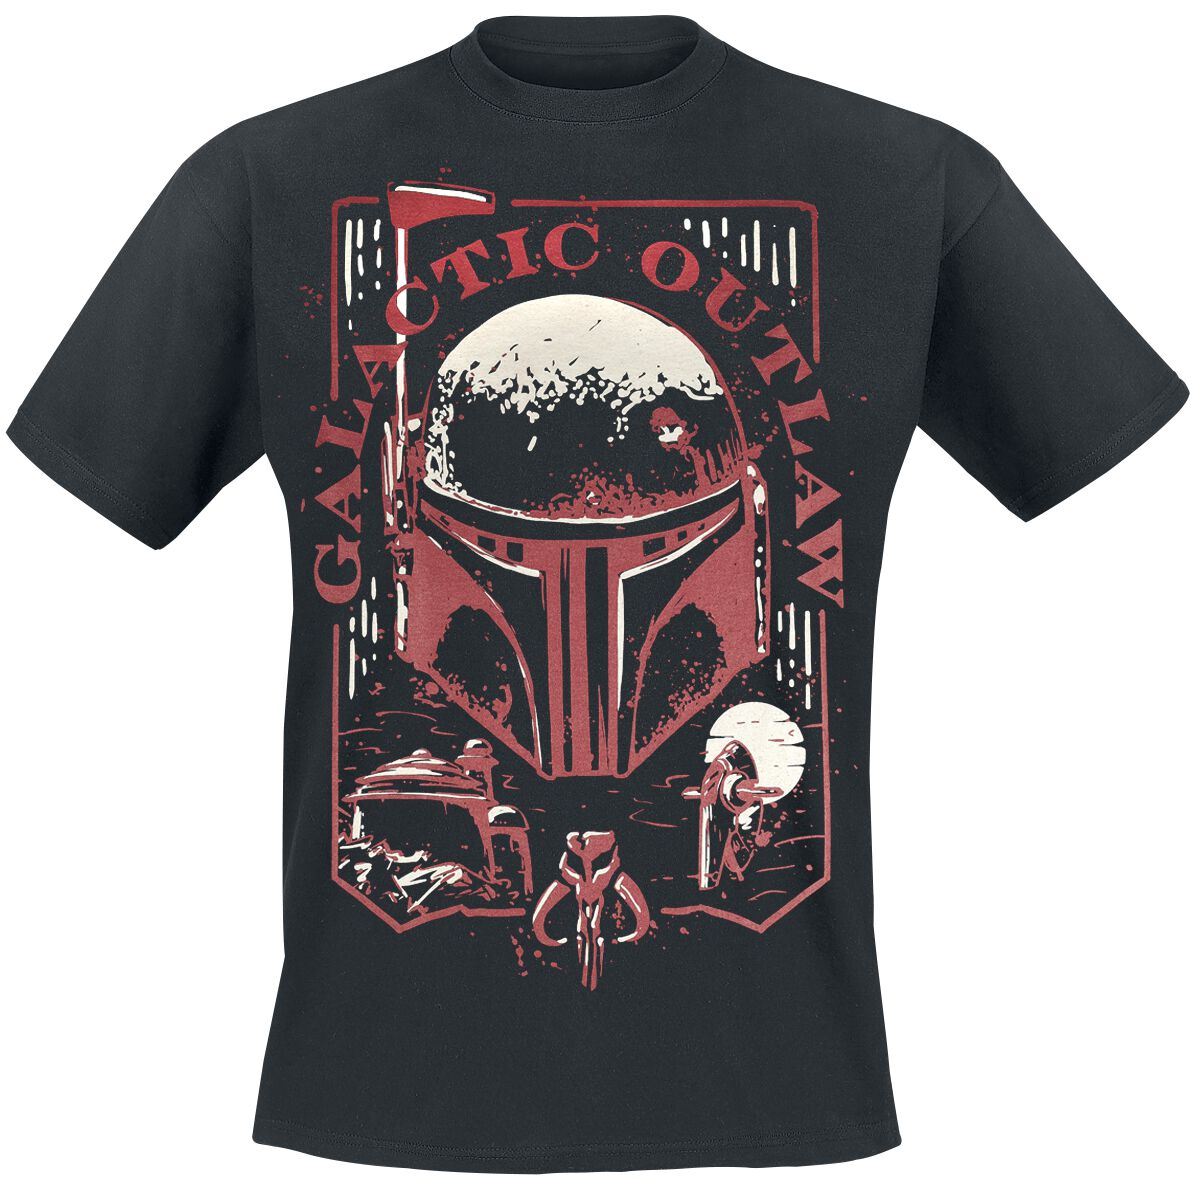 Star Wars T-Shirt - The Book Of Boba Fett - Galactic Outlaw - S bis 4XL - für Männer - Größe XXL - schwarz  - EMP exklusives Merchandise!